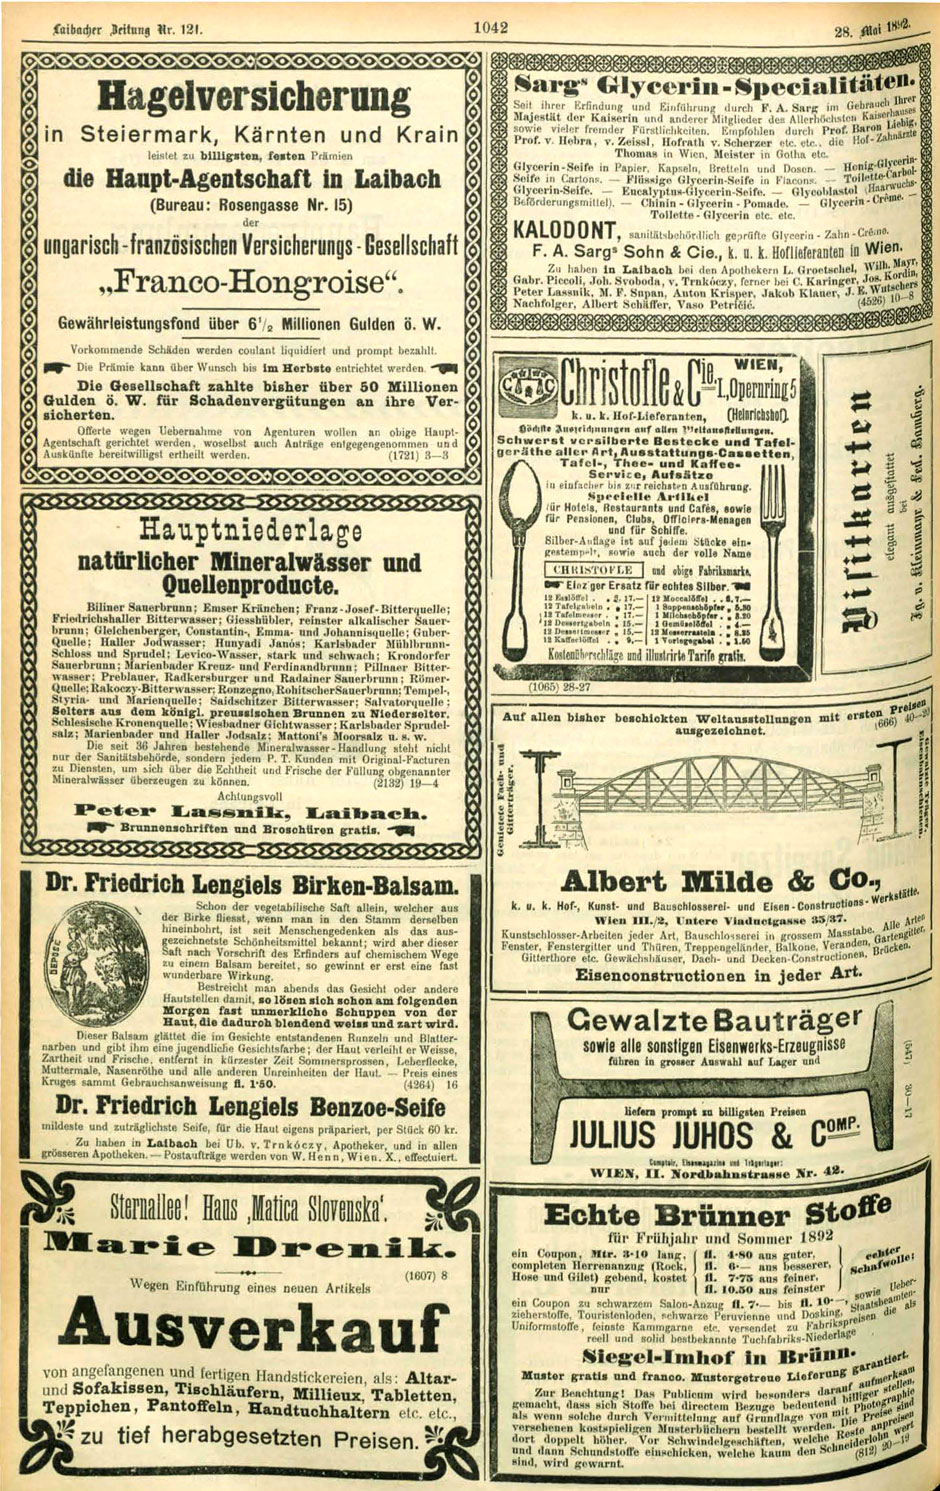 Anzeige im Amtsblatt zur Laibacher Zeitung am 28.5.1892